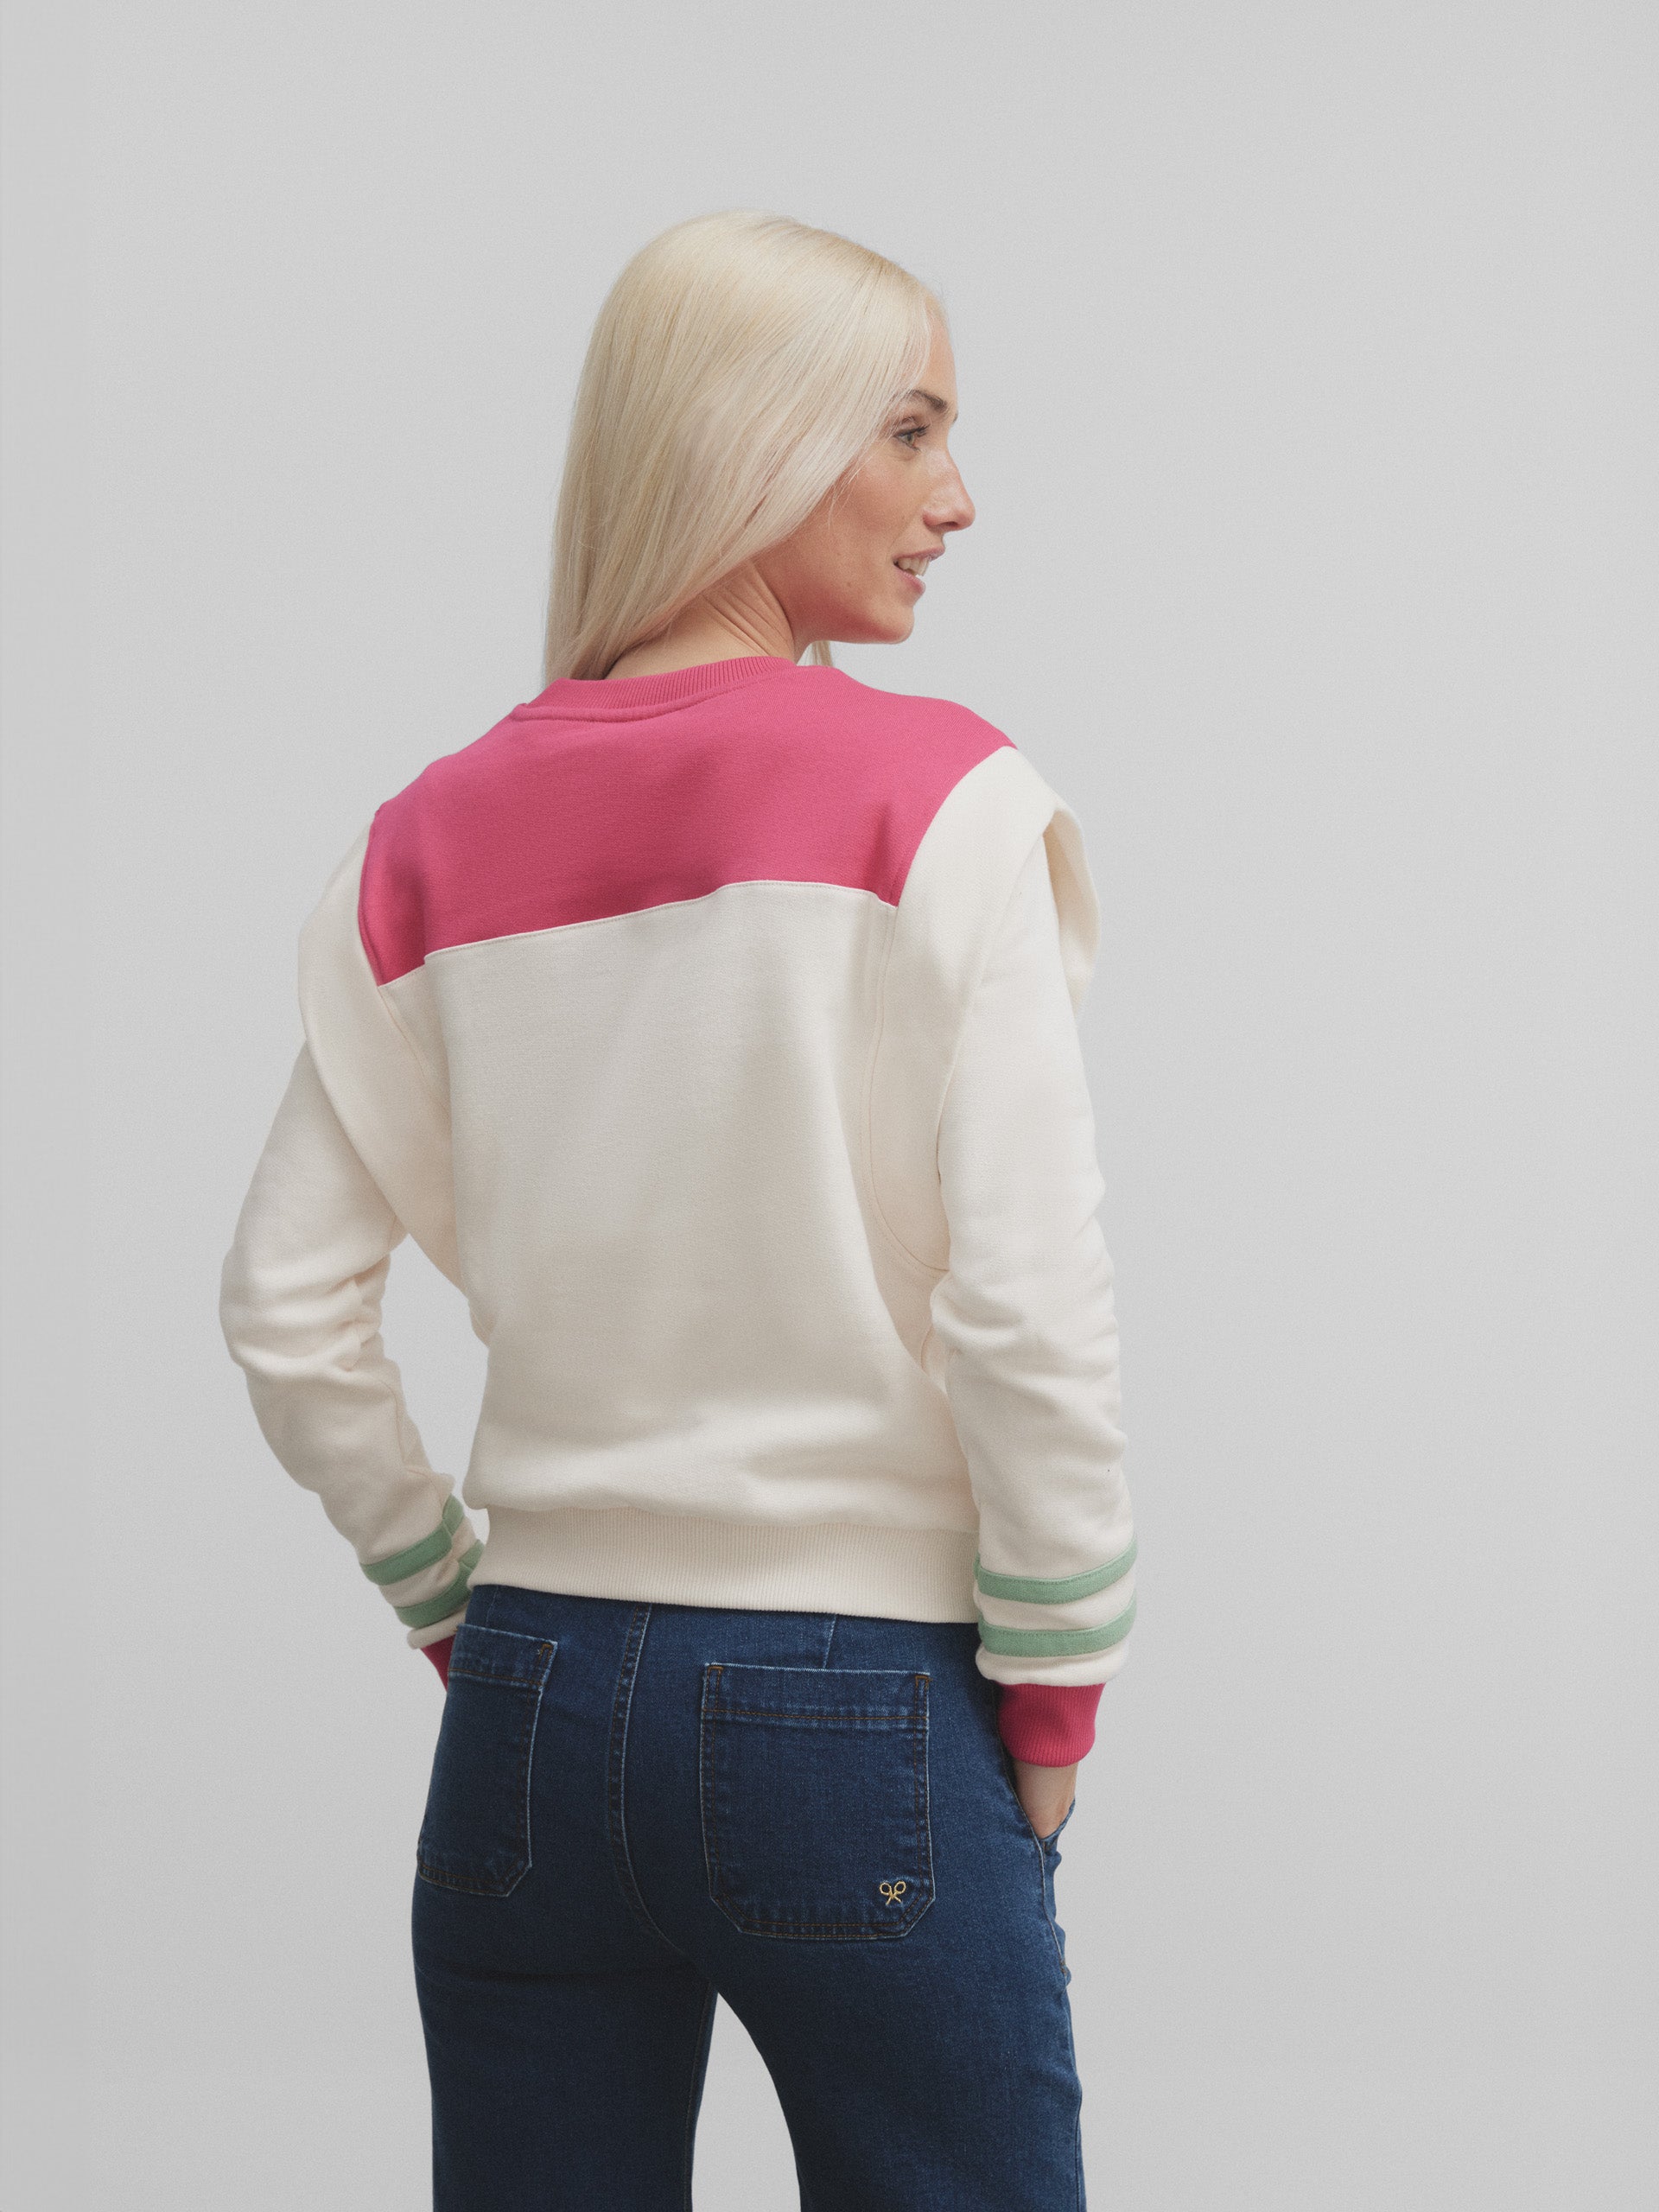 Women's pink tricolor shoulder pads sweatshirt